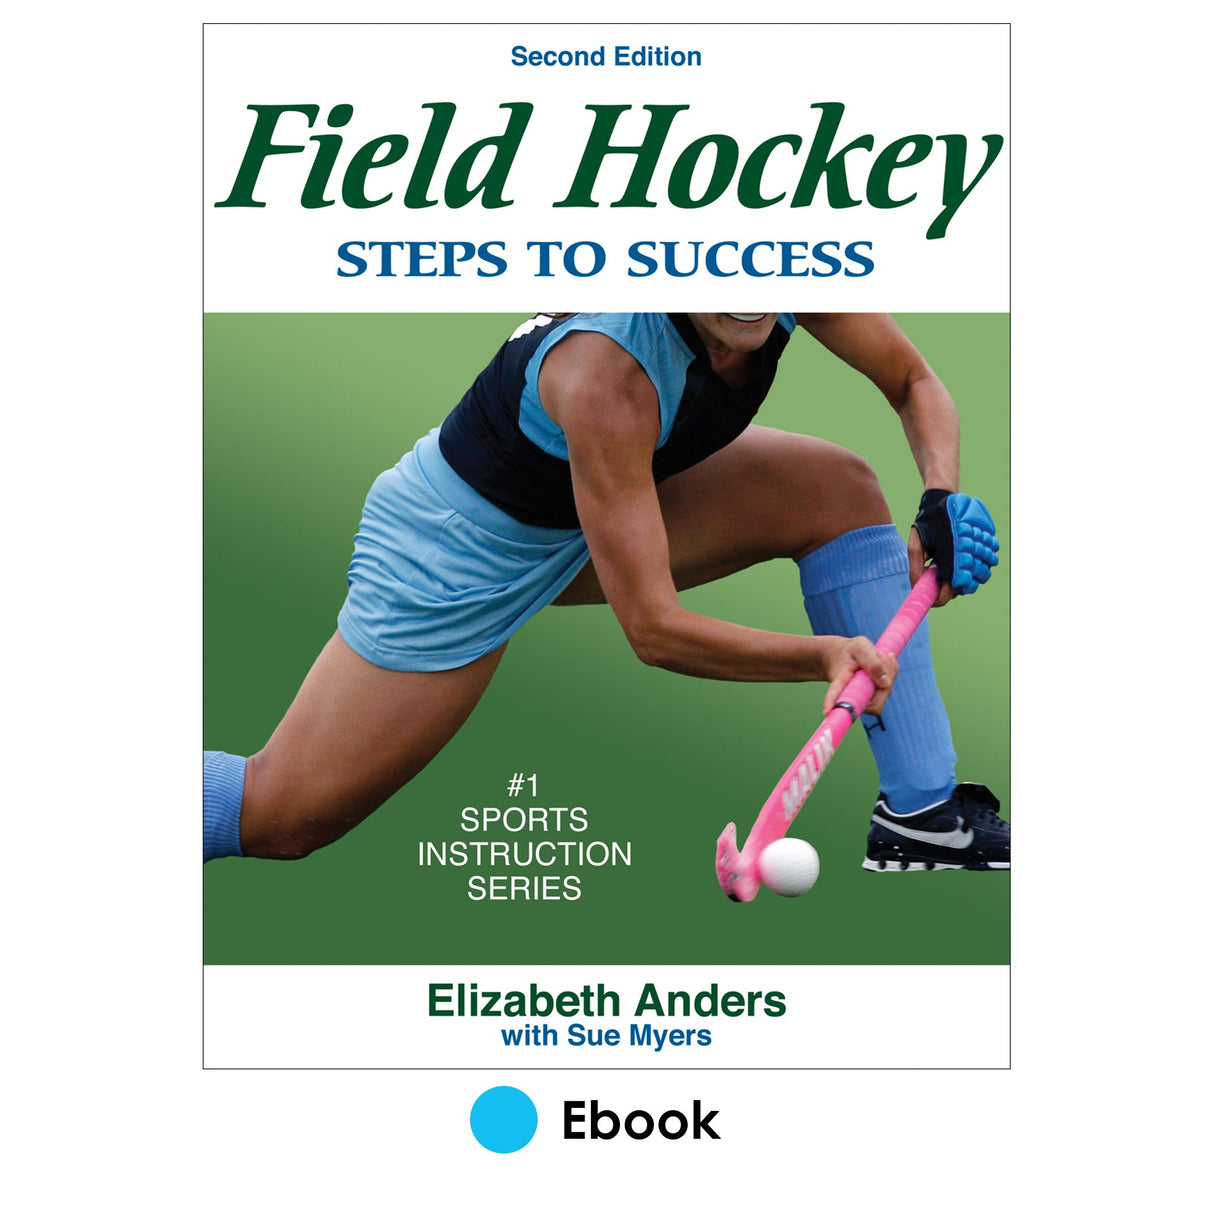 Field Hockey 2nd Edition PDF